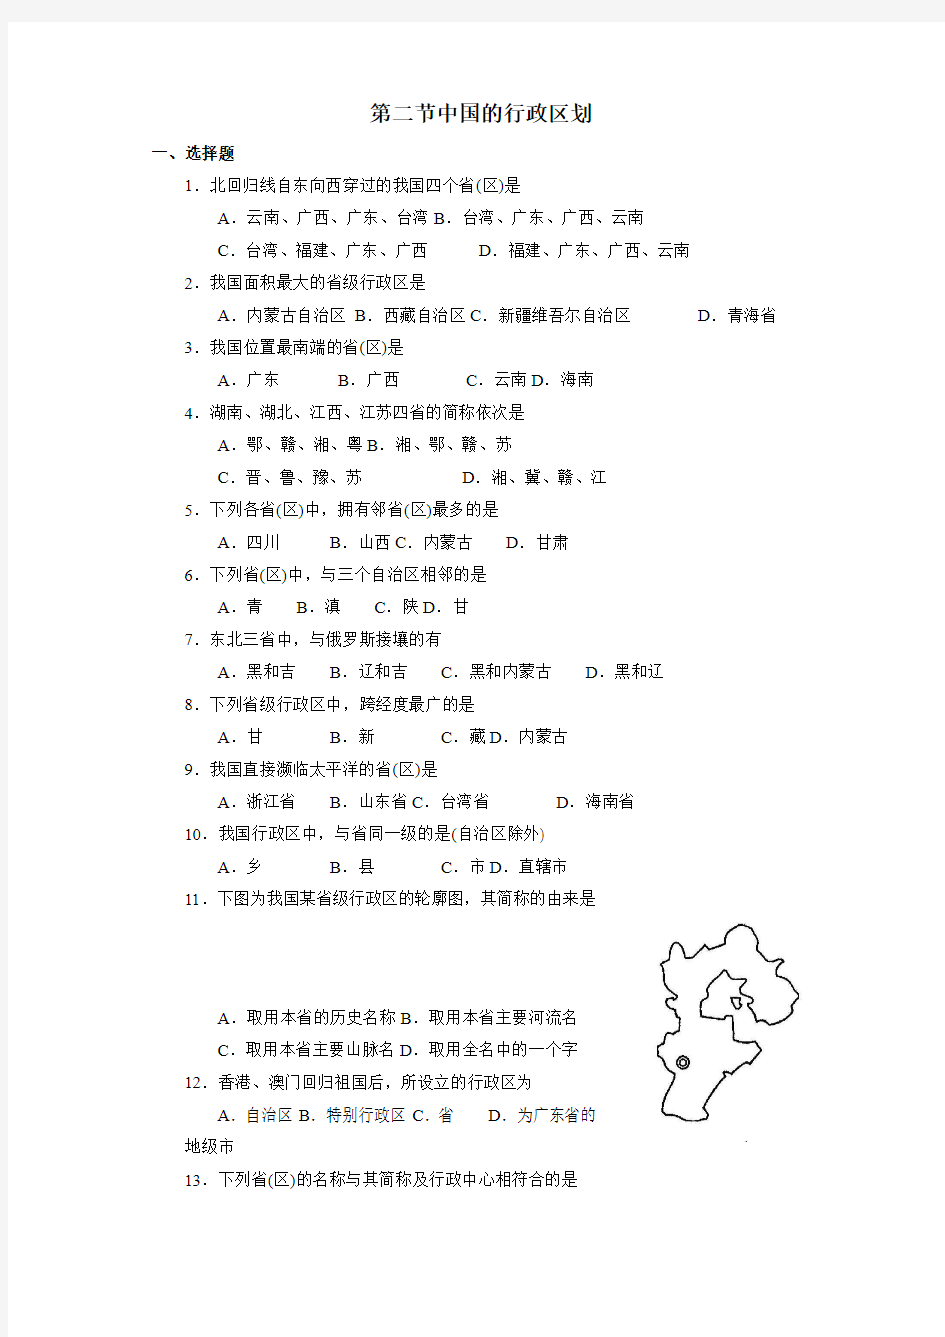 第二节  中国的行政区划